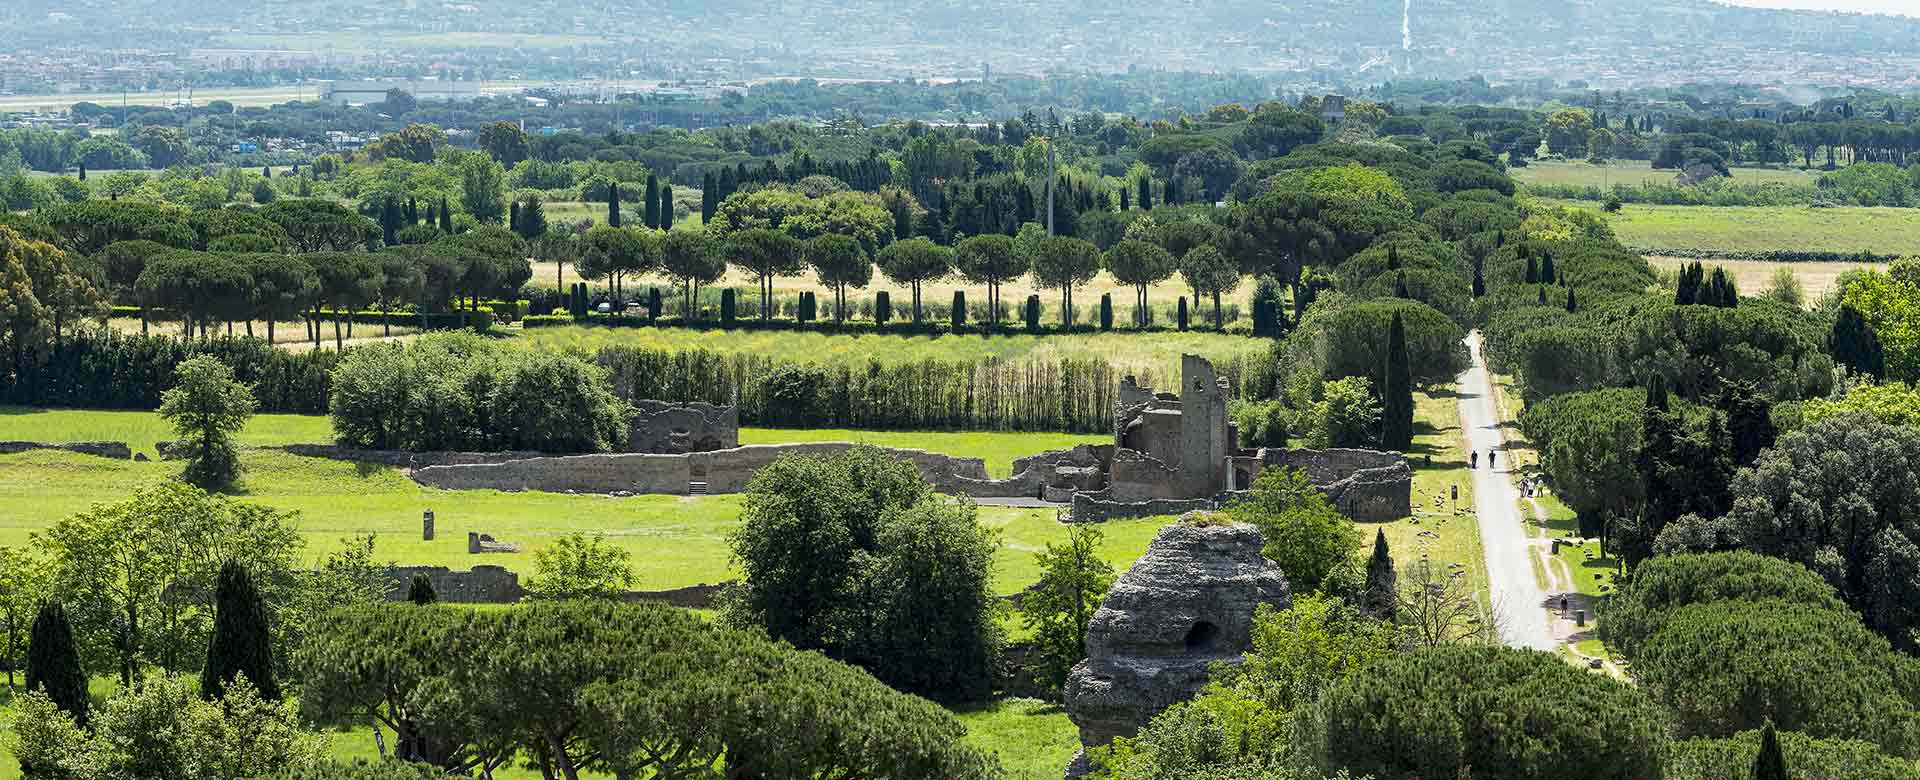 Appia Antica e Quintili ©Stefano Castellani